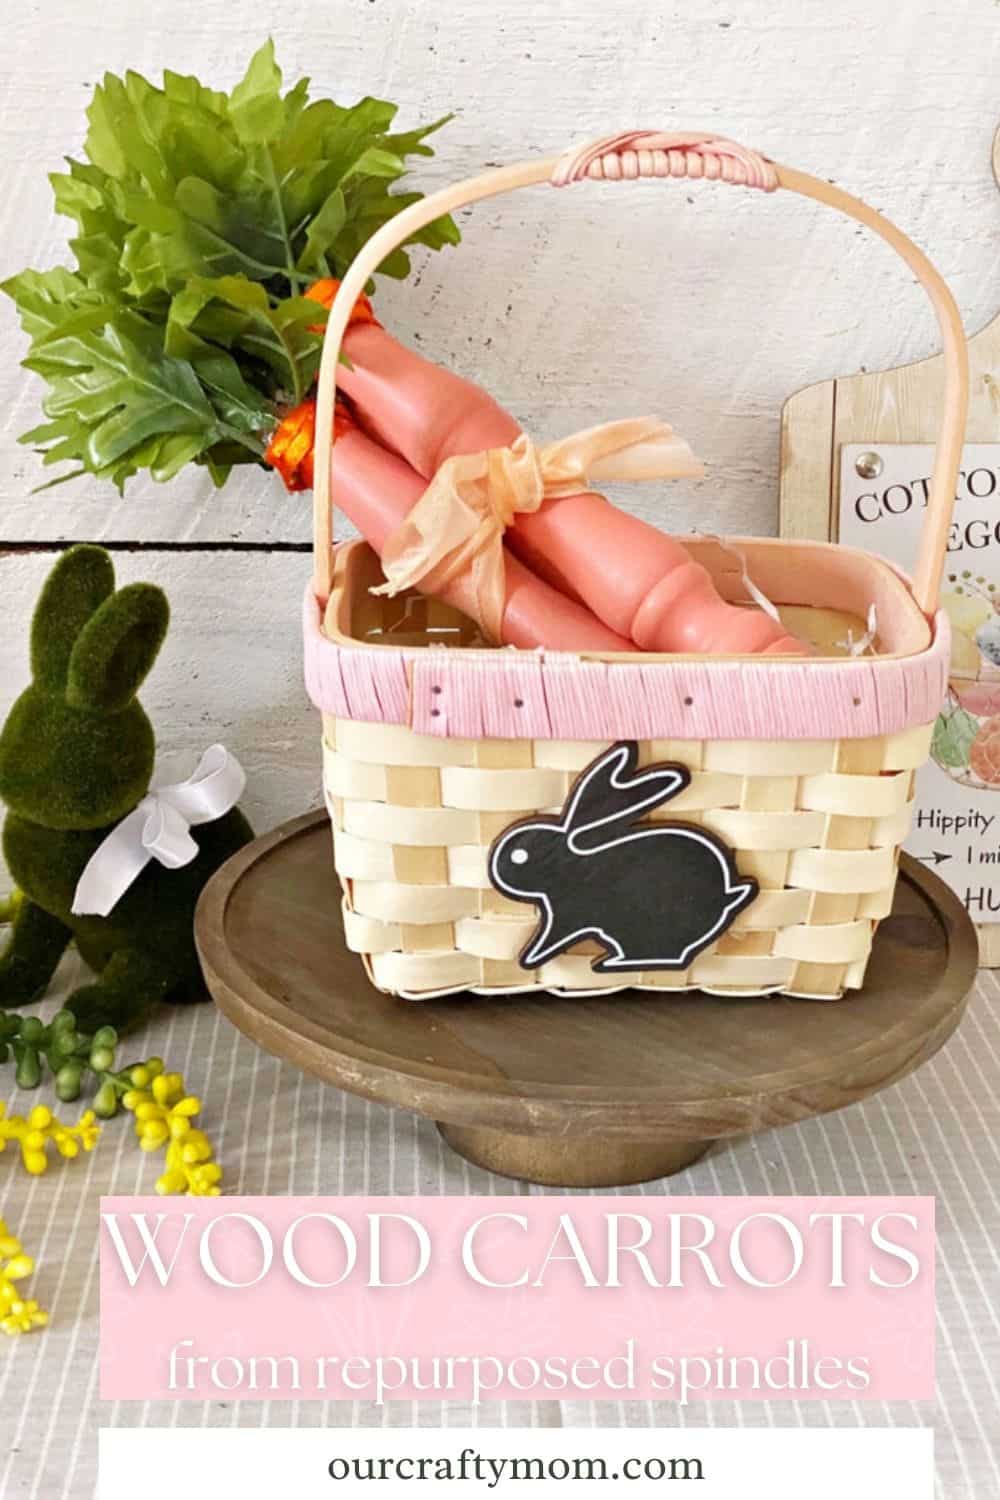 DIY wooden carrots in basket